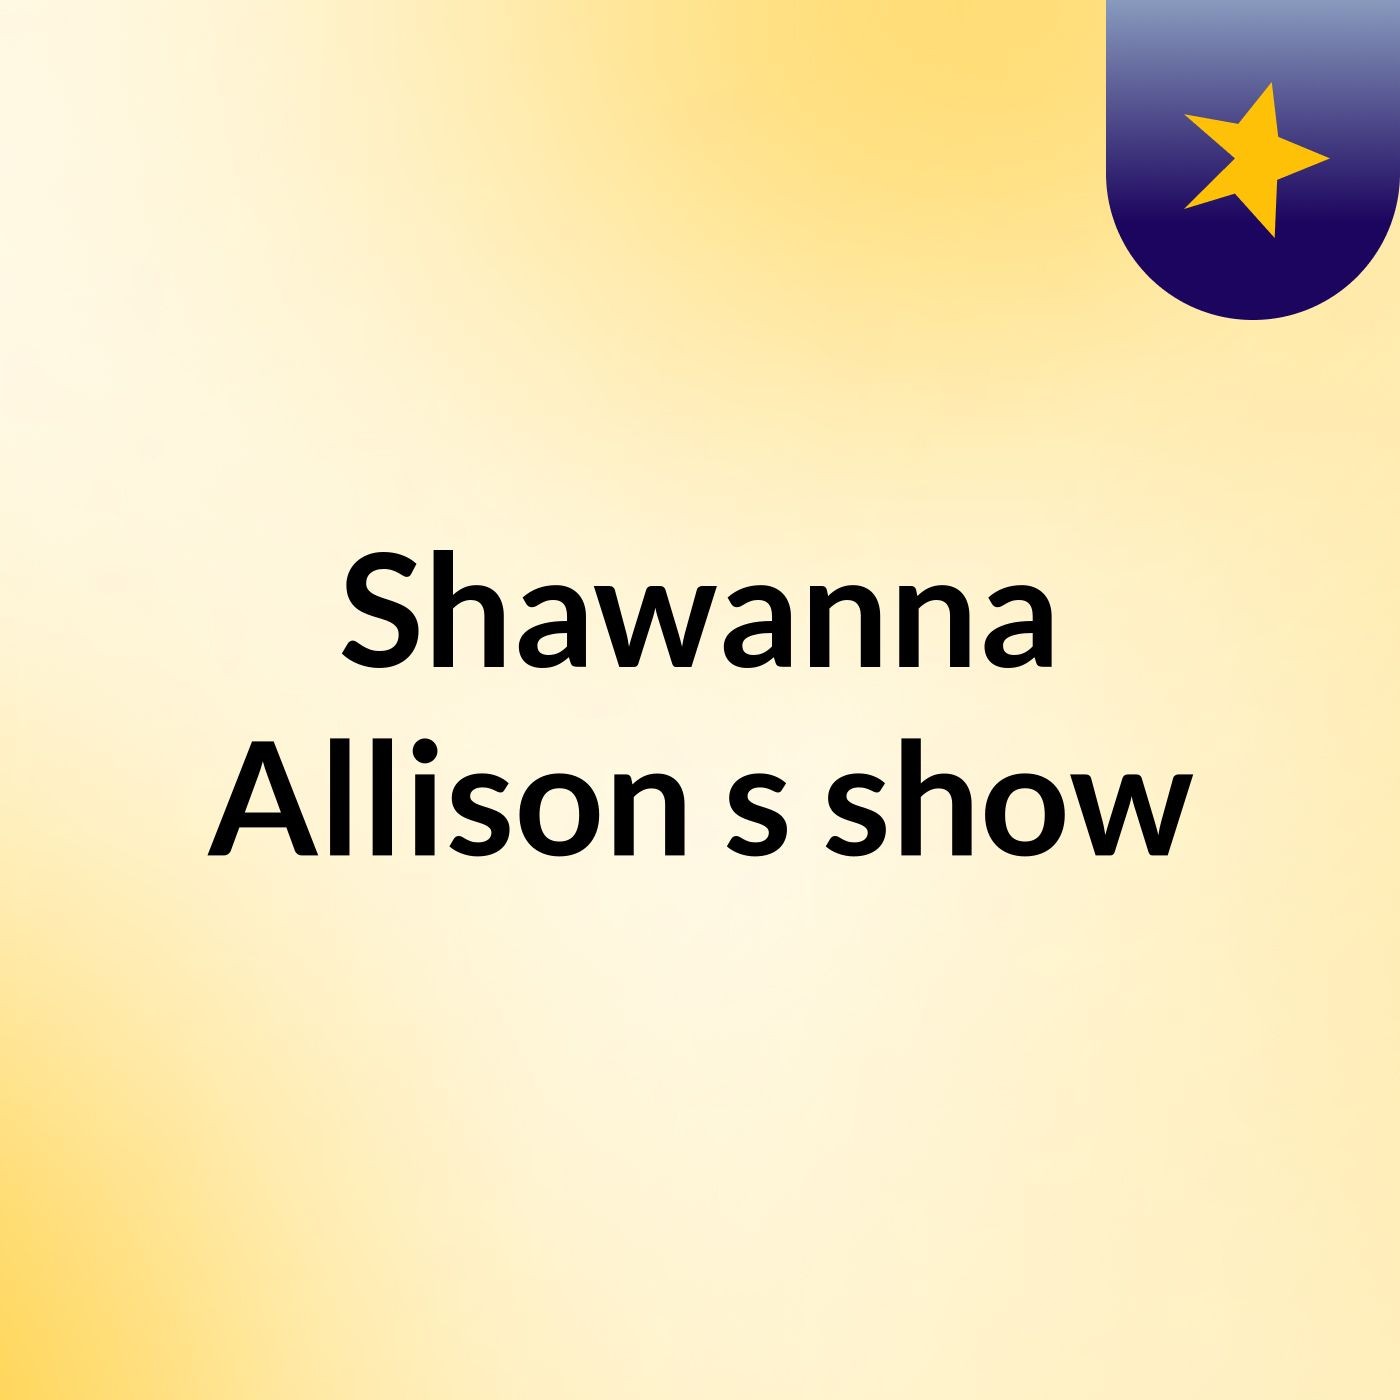 Shawanna Allison's show